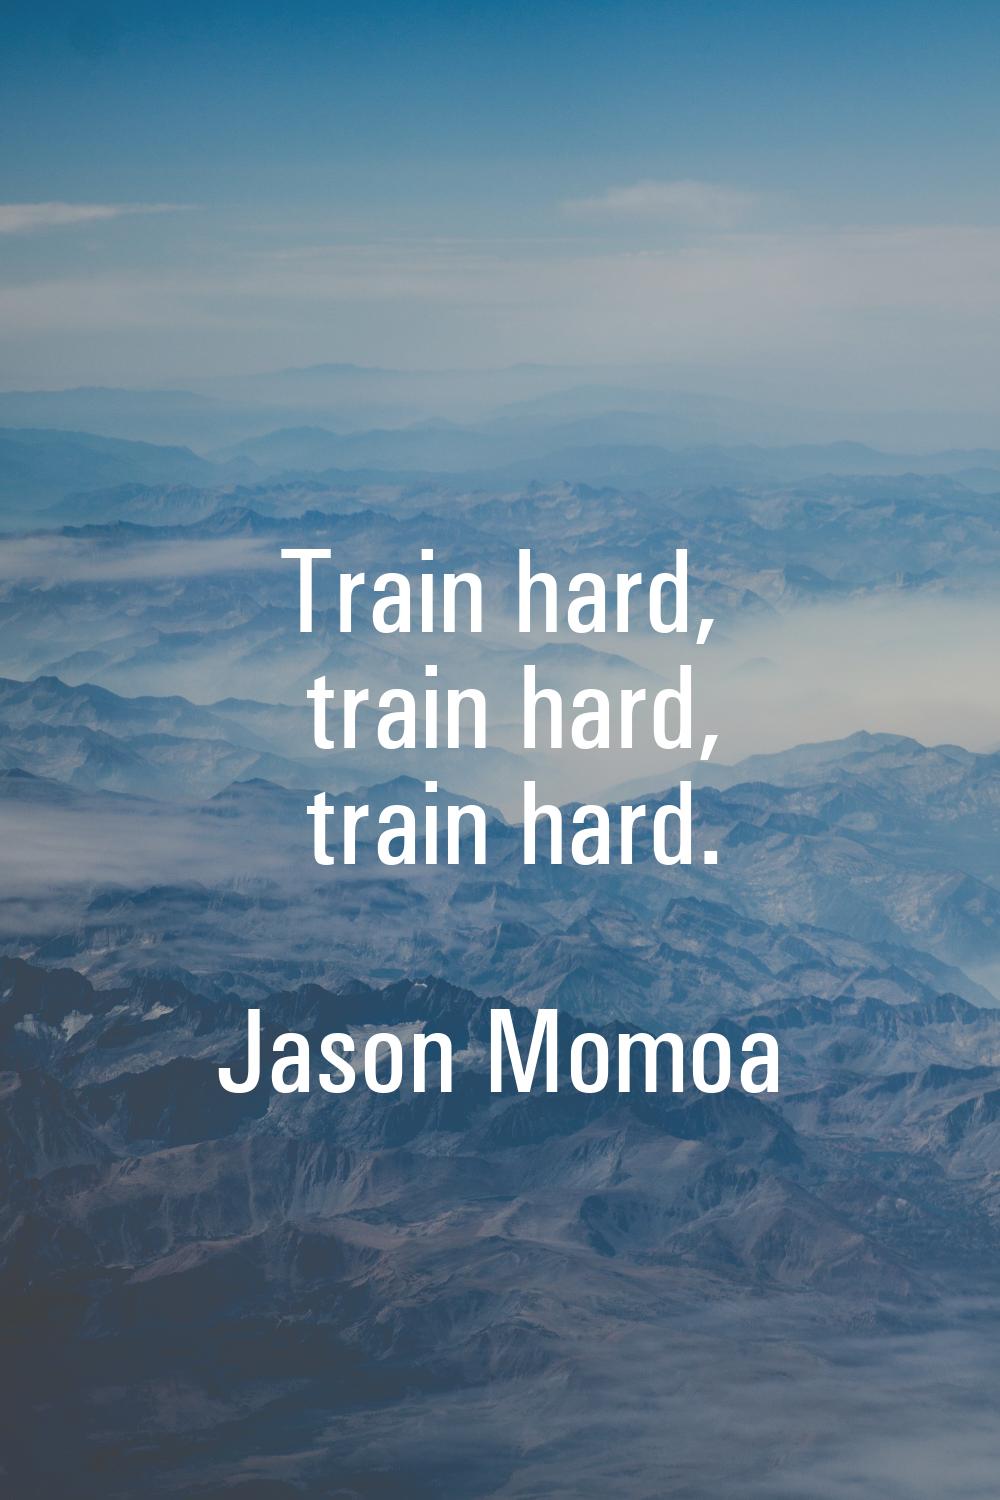 Train hard, train hard, train hard.